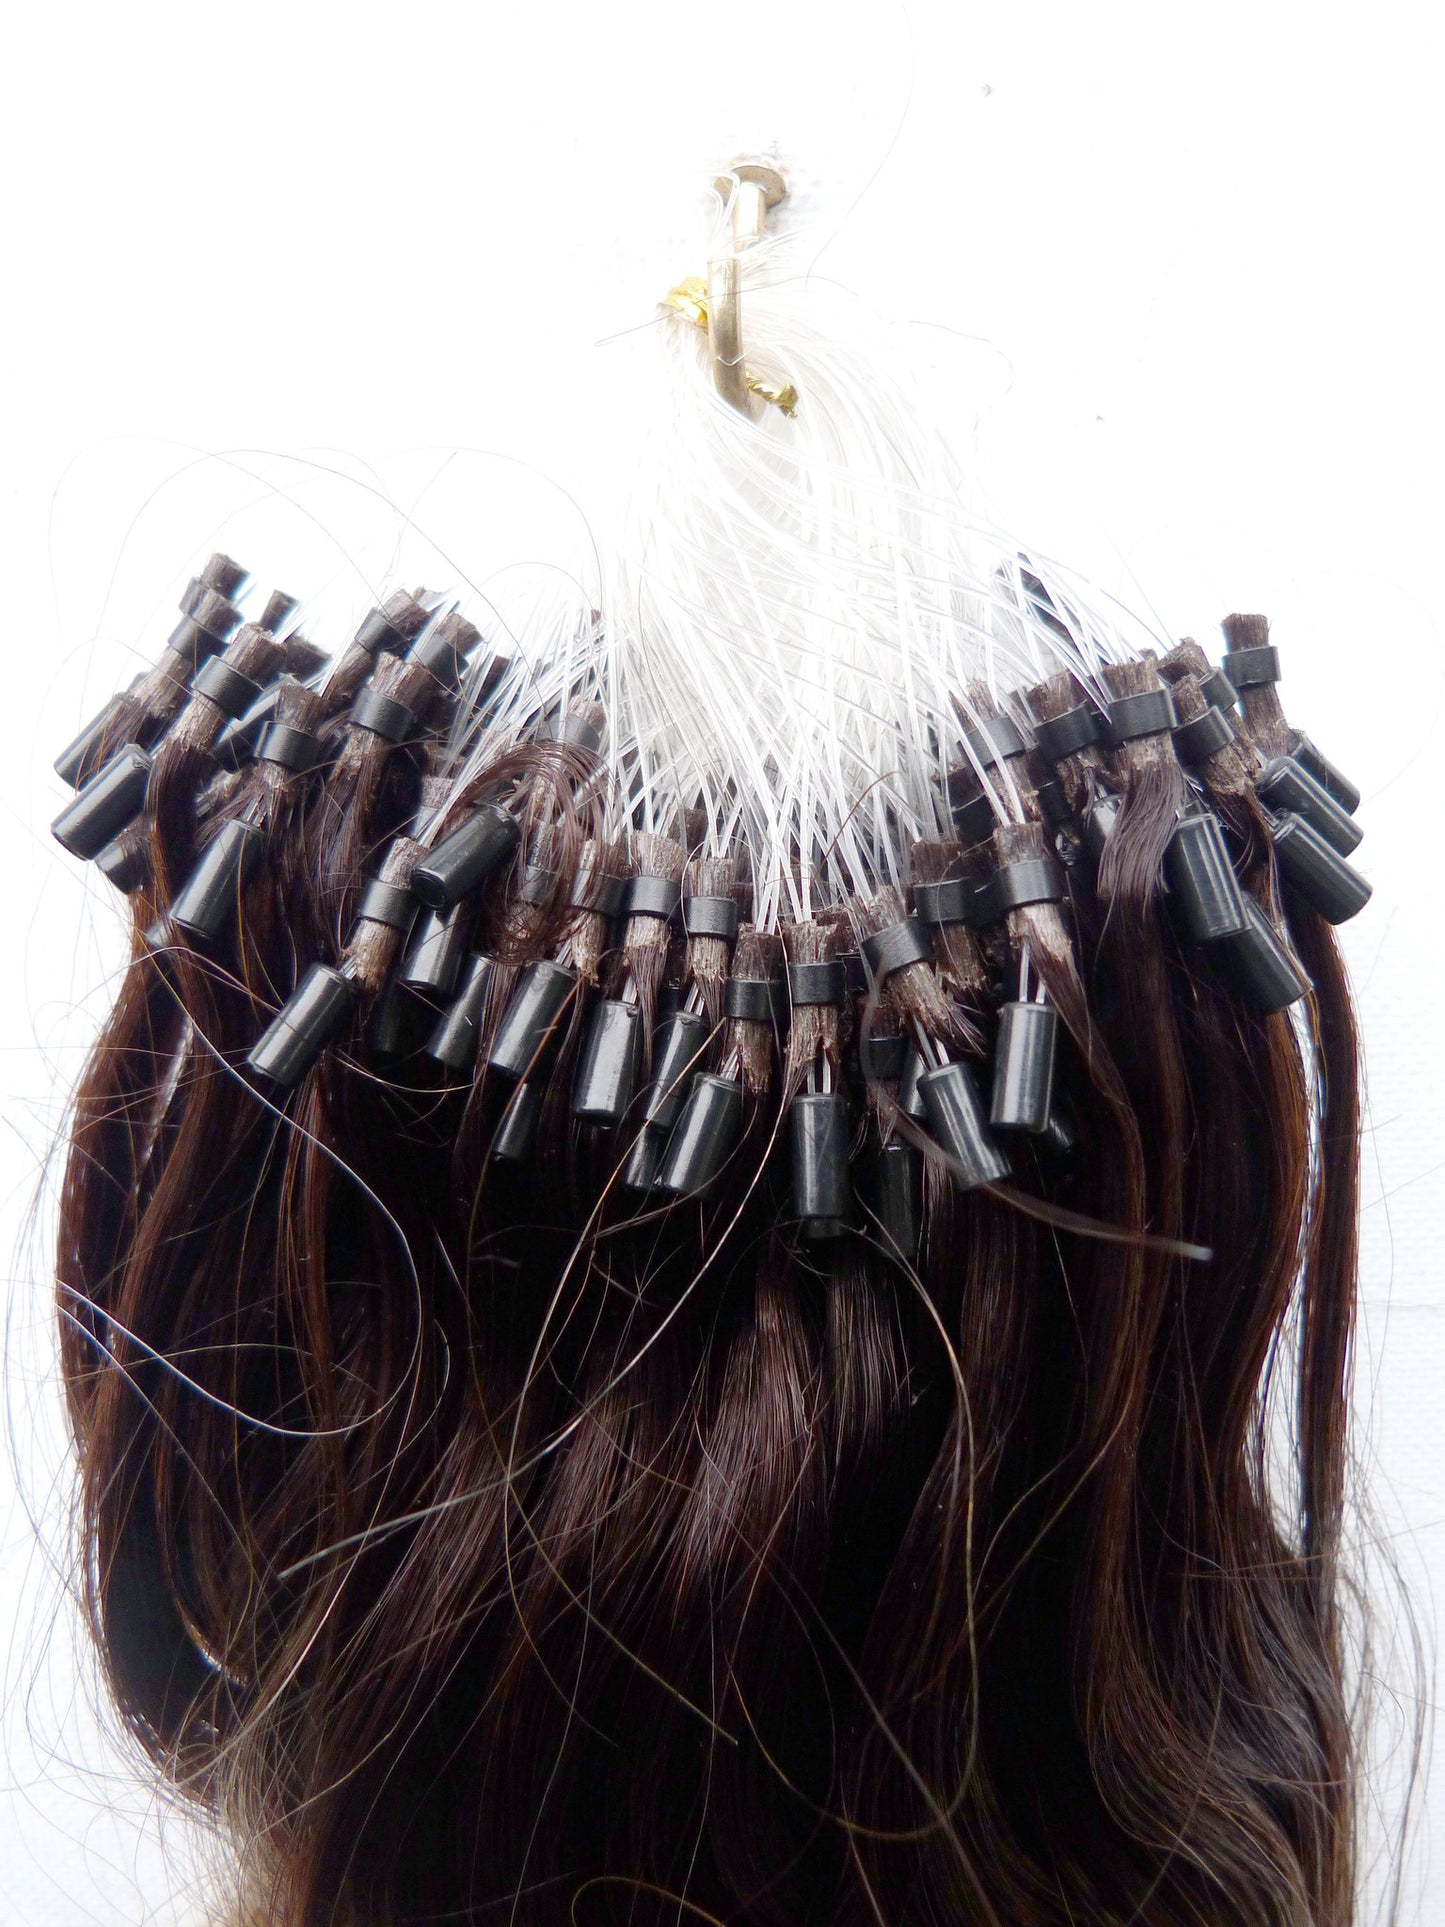 European virgin human hair extensions - micro loop extensions-virgin hair & beauty, de bästa hårförlängningarna, äkta jungfruligt människohår.